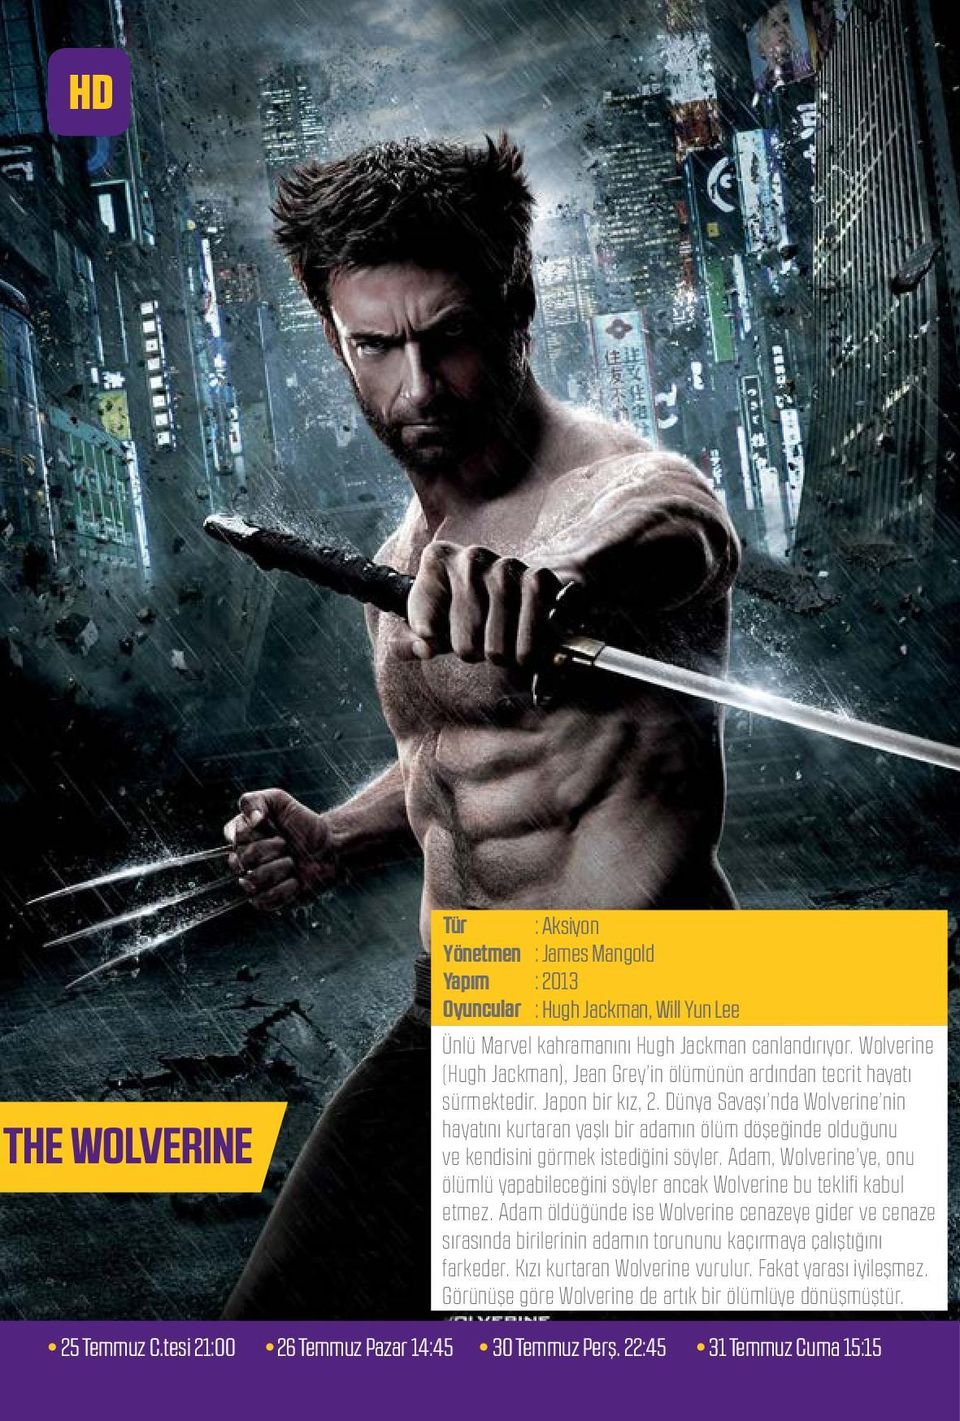 Dünya Savaşı nda Wolverine nin hayatını kurtaran yaşlı bir adamın ölüm döşeğinde olduğunu ve kendisini görmek istediğini söyler.